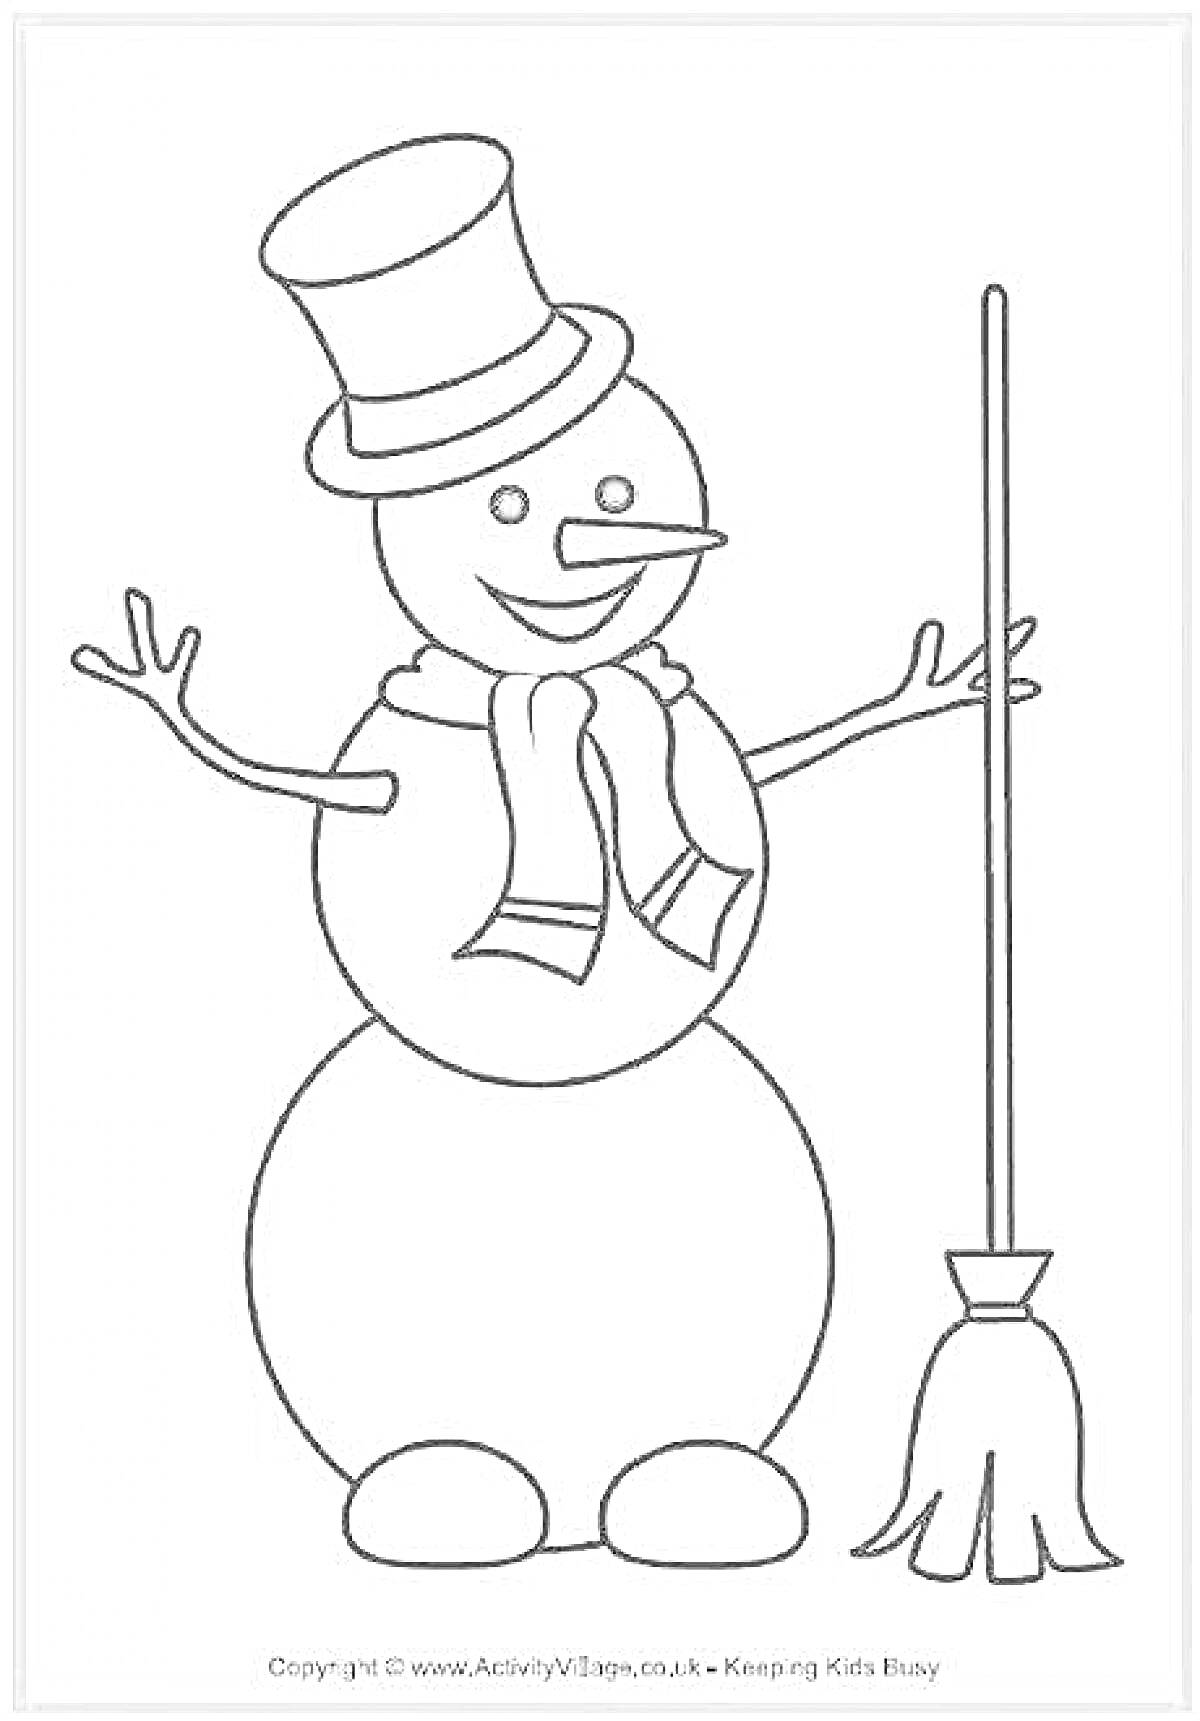 Раскраска Снеговик с метлой в шляпе и шарфе